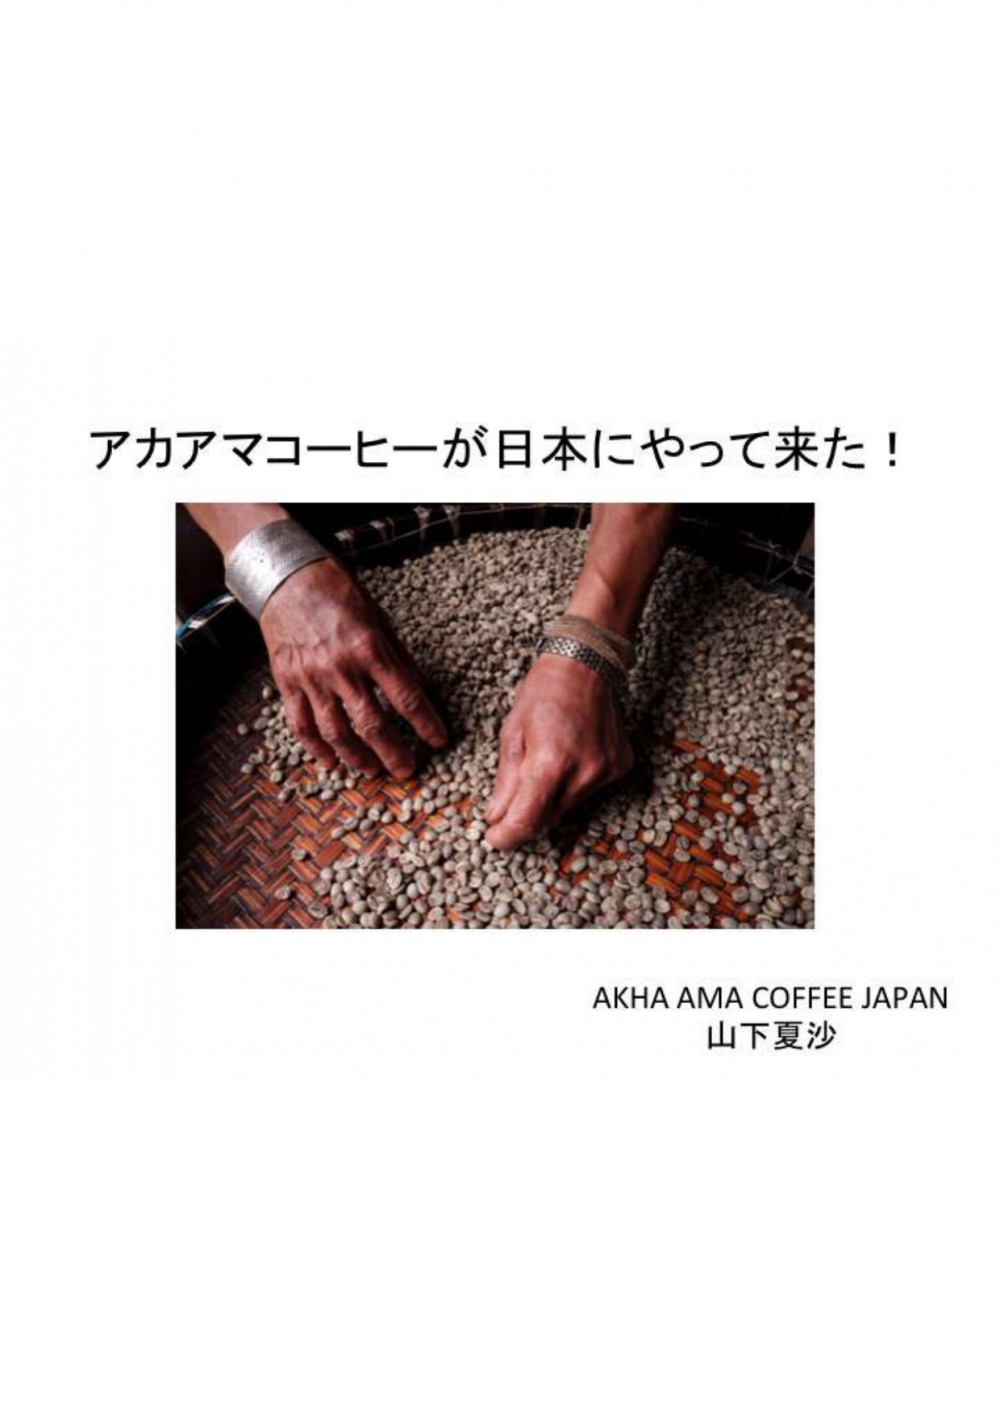 [タイコーヒーオンラインセミナー資料④]　AKHA AMA COFFEE が日本にやってきた！